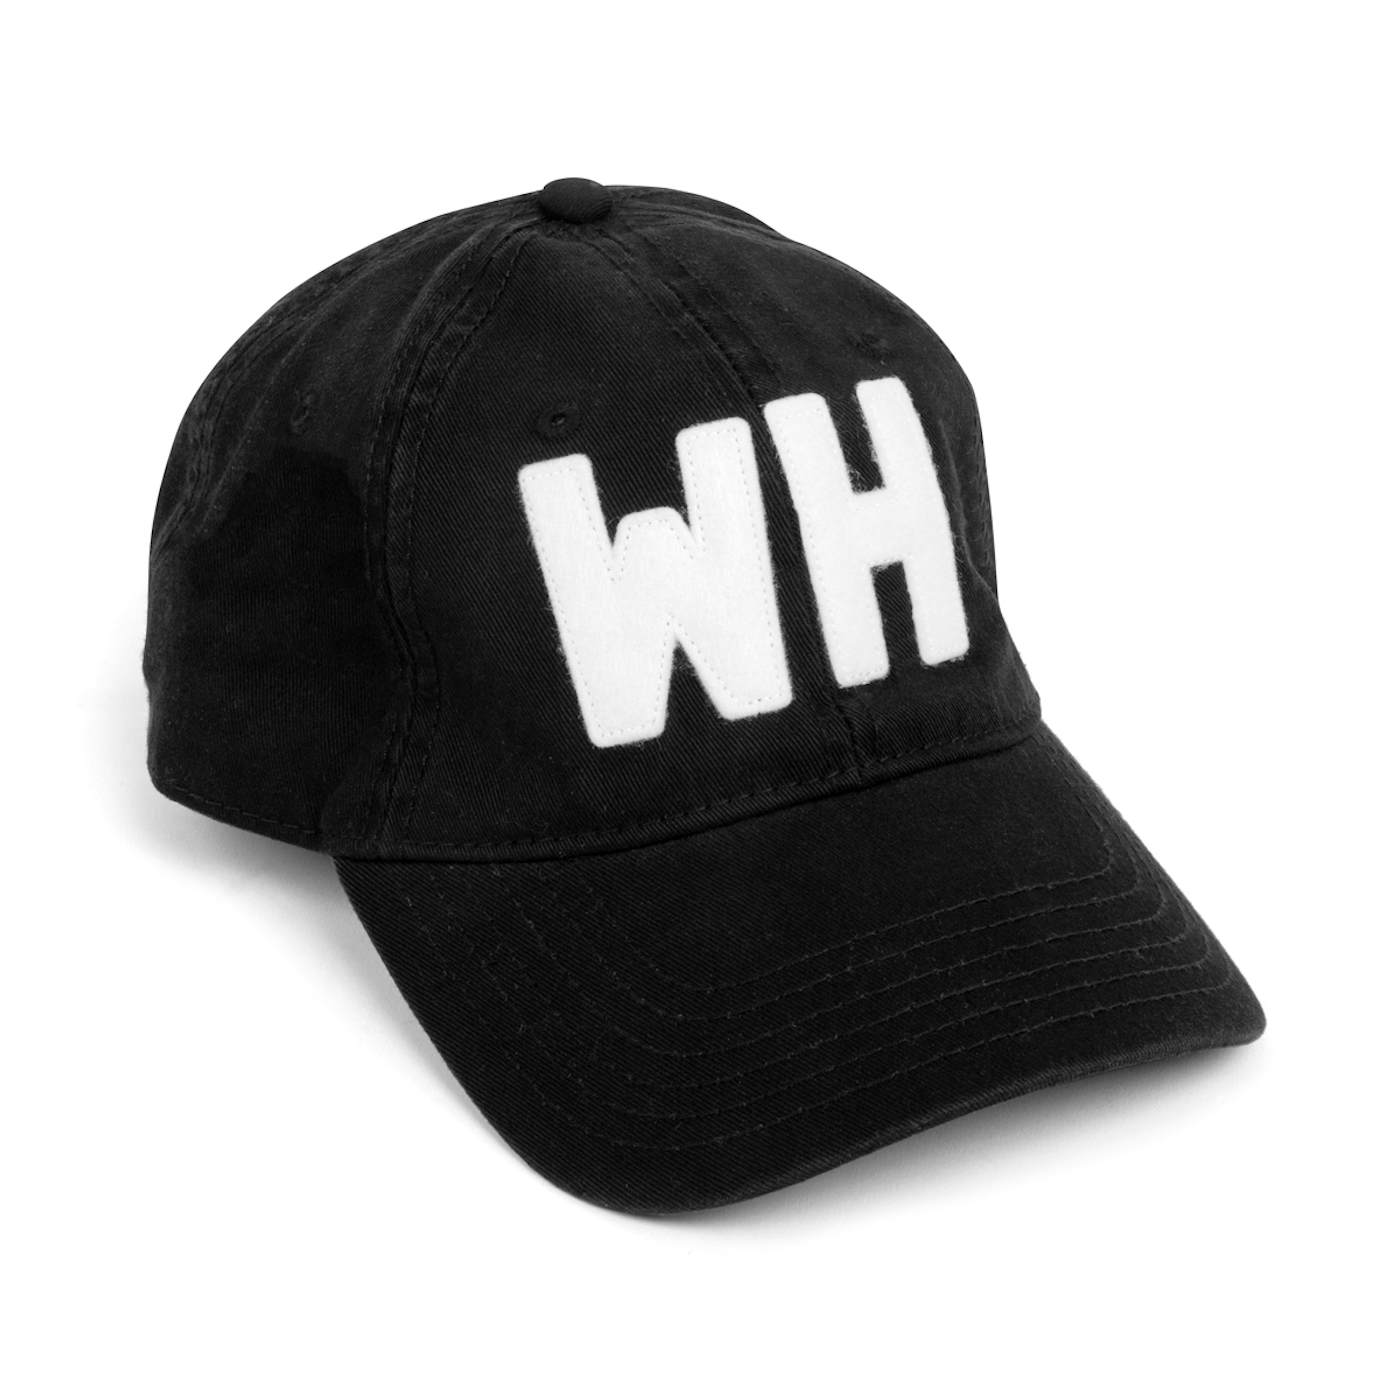 WH – Walker Hayes Hat - Black